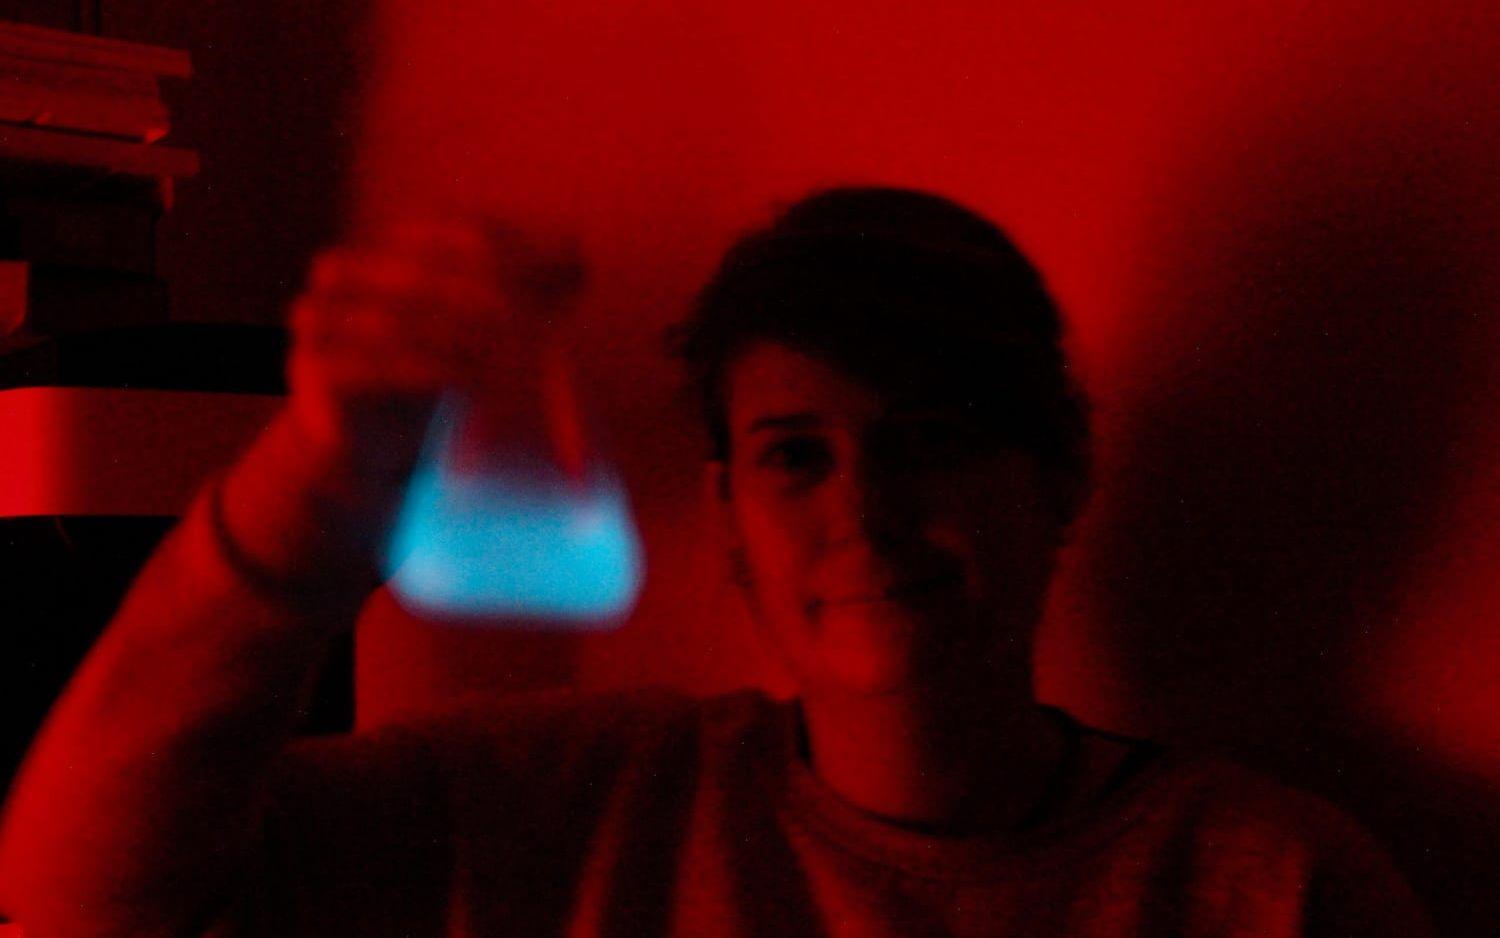 Miljontals mikroalger lyser upp när forskaren Kristie Rigby skakar en odling i det mörka laboratoriet.
